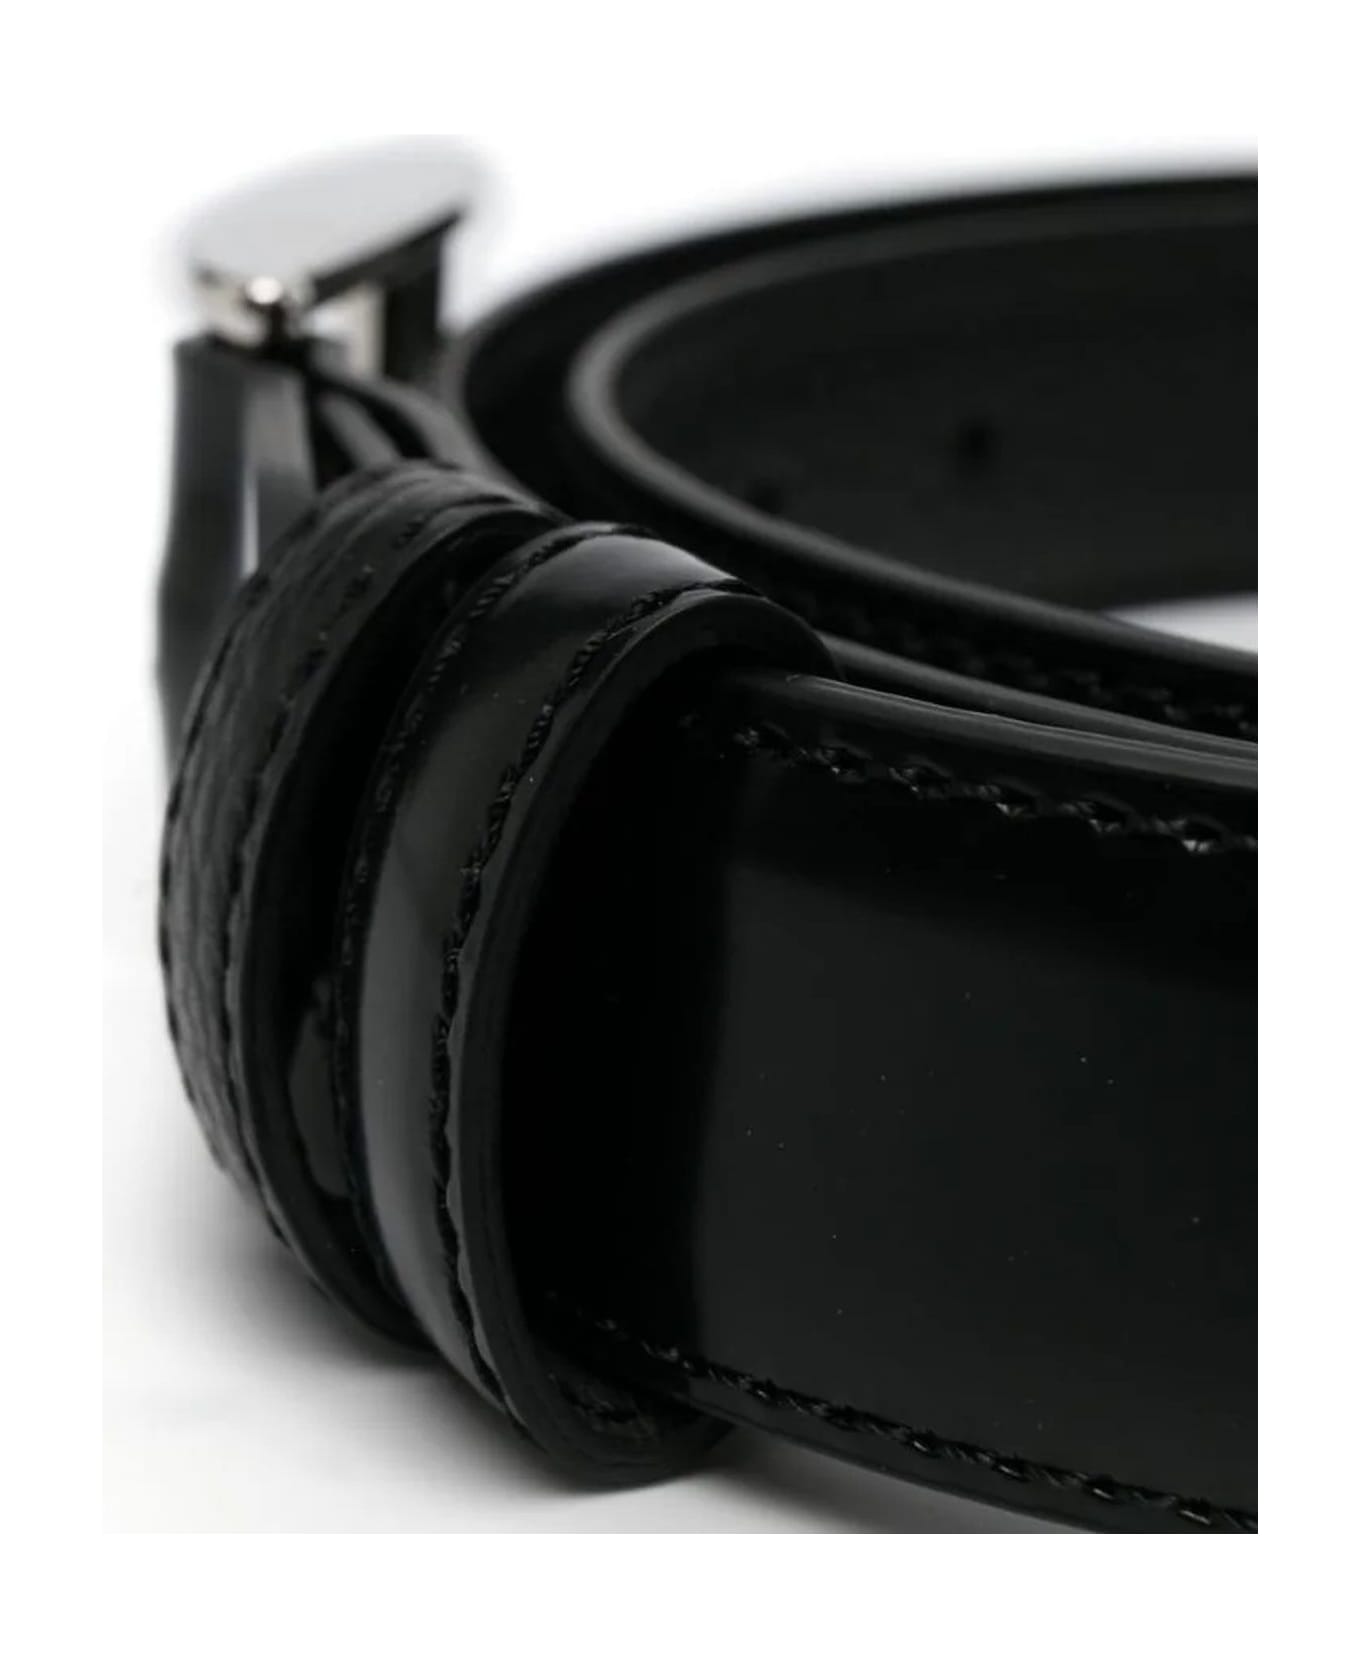 Hogan Black Leather Belt - NERO ベルト